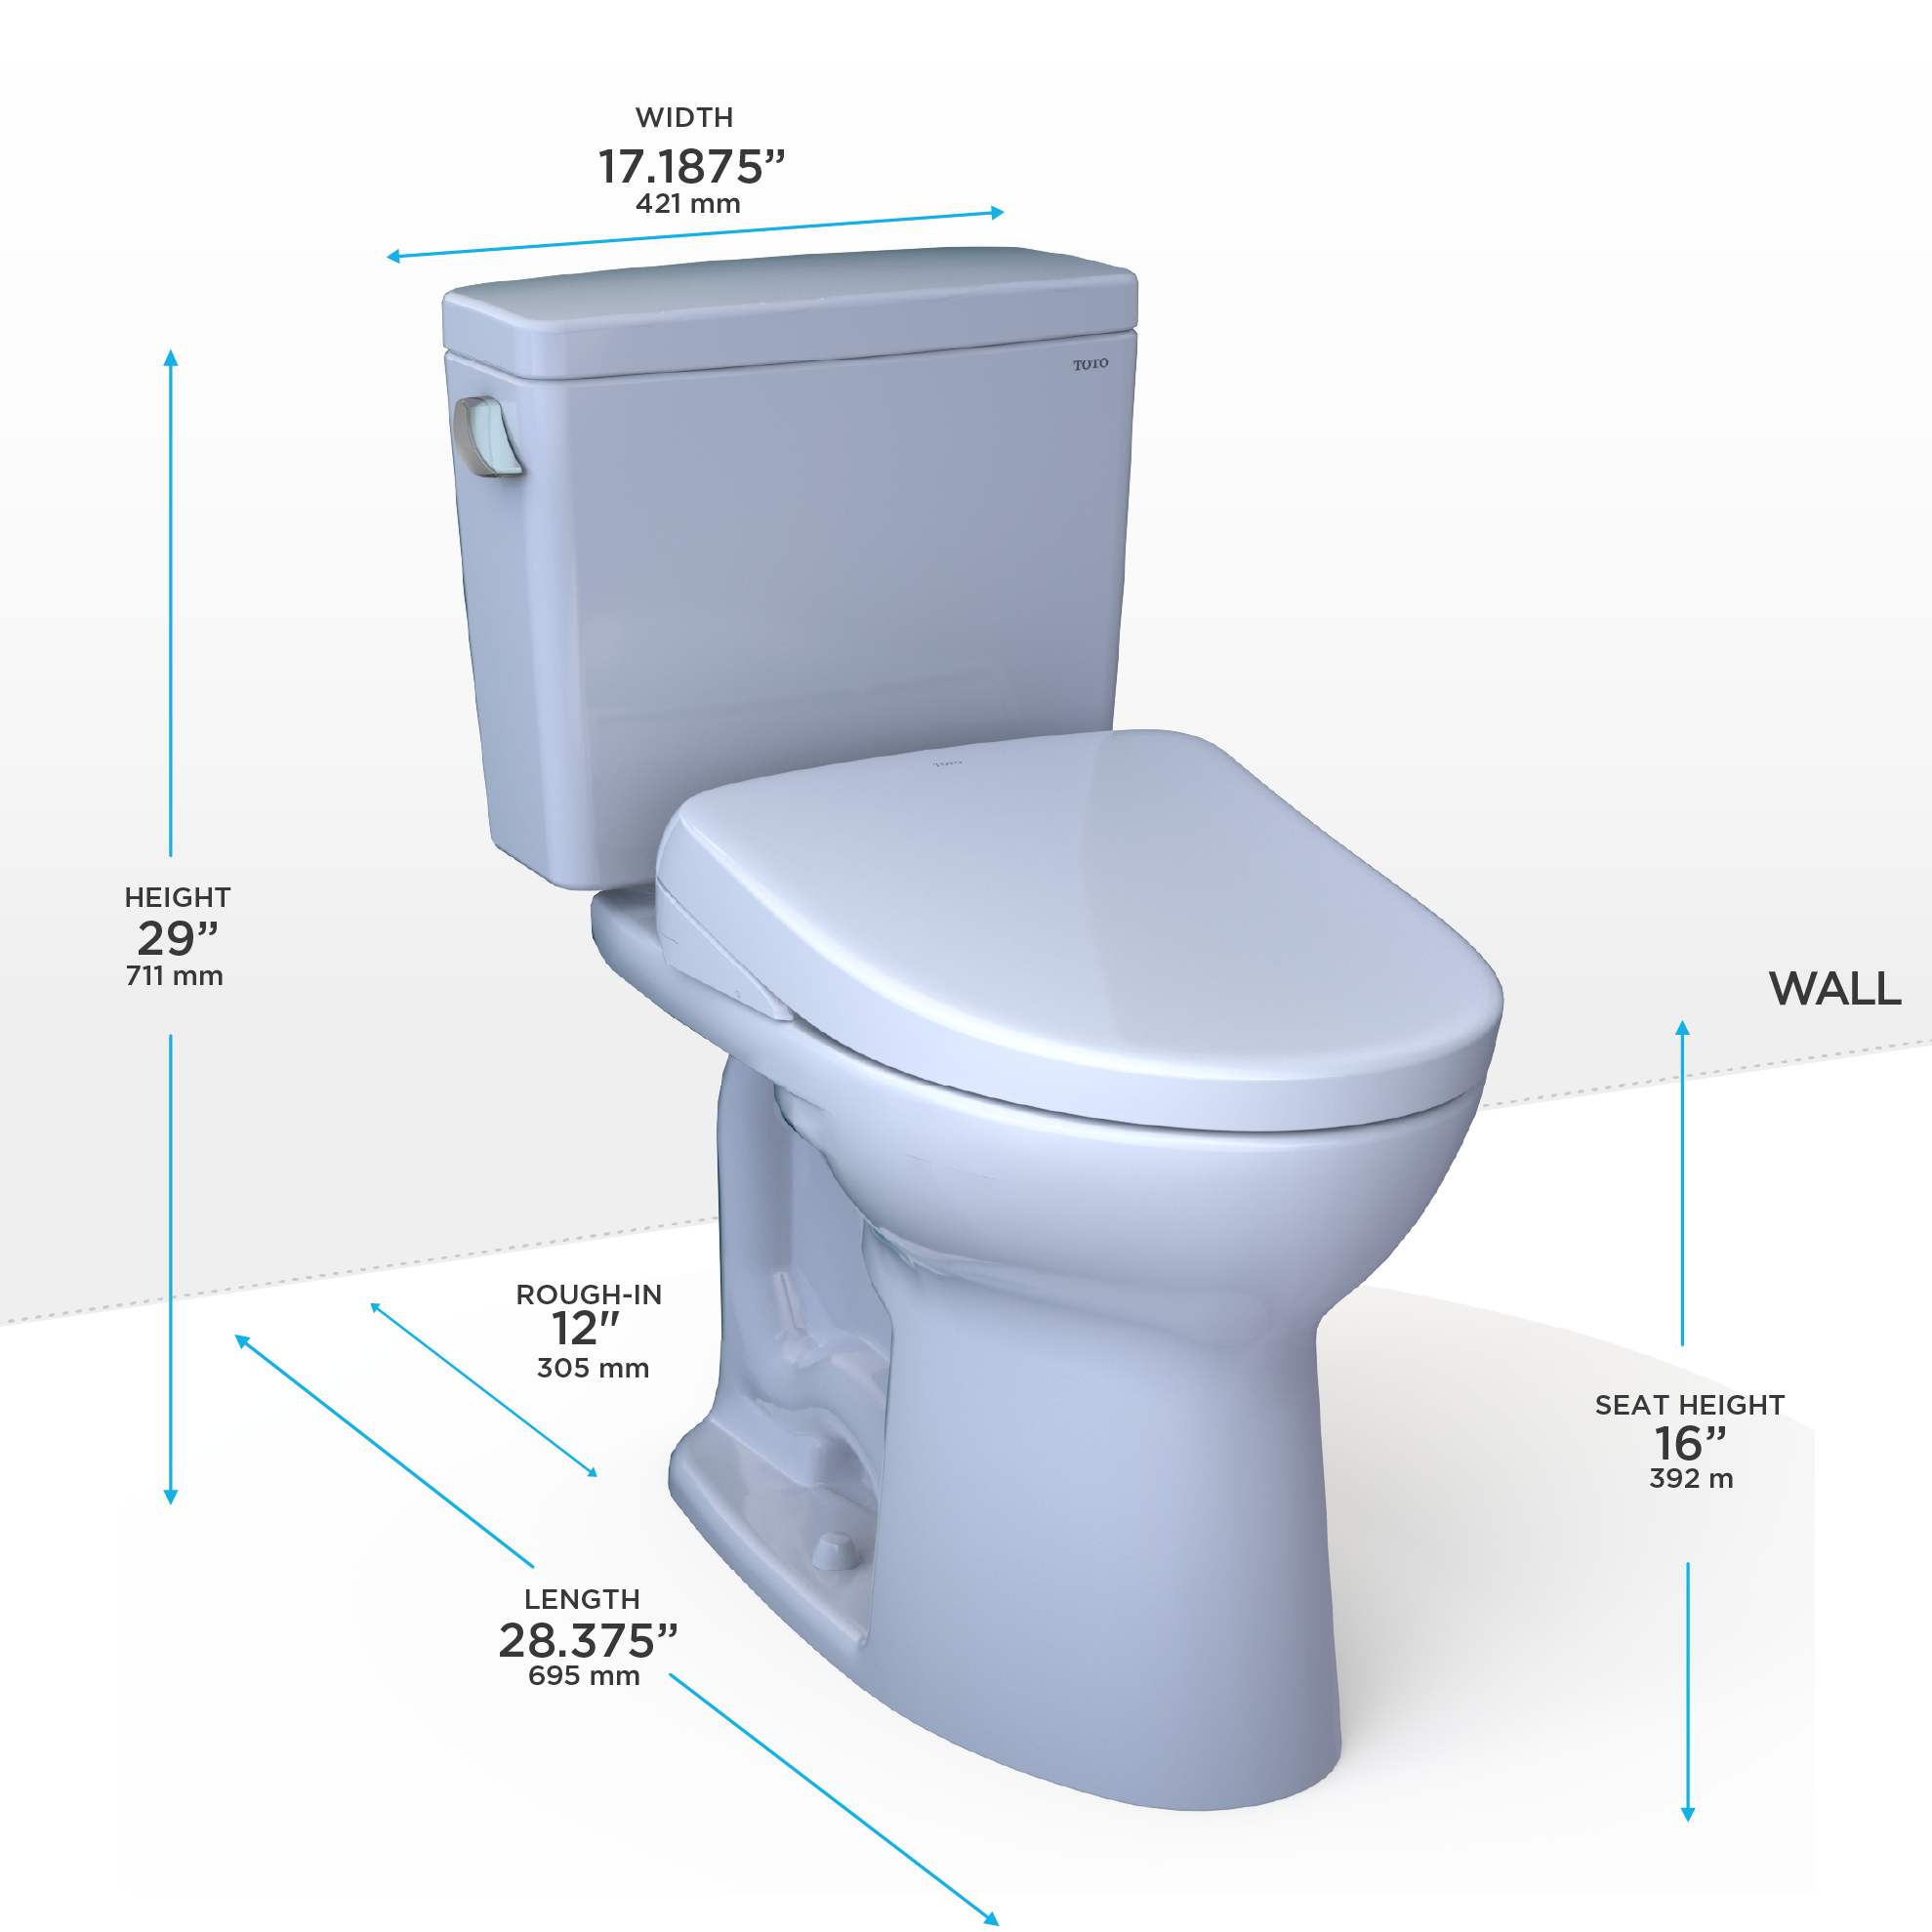 TOTO Drake WASHLET+ Two-Piece Elongated 1.28 GPF TORNADO FLUSH Toilet with S7A Contemporary Bidet Seat, Cotton White - MW7764736CEG#01,  MW7764736CEGA#01